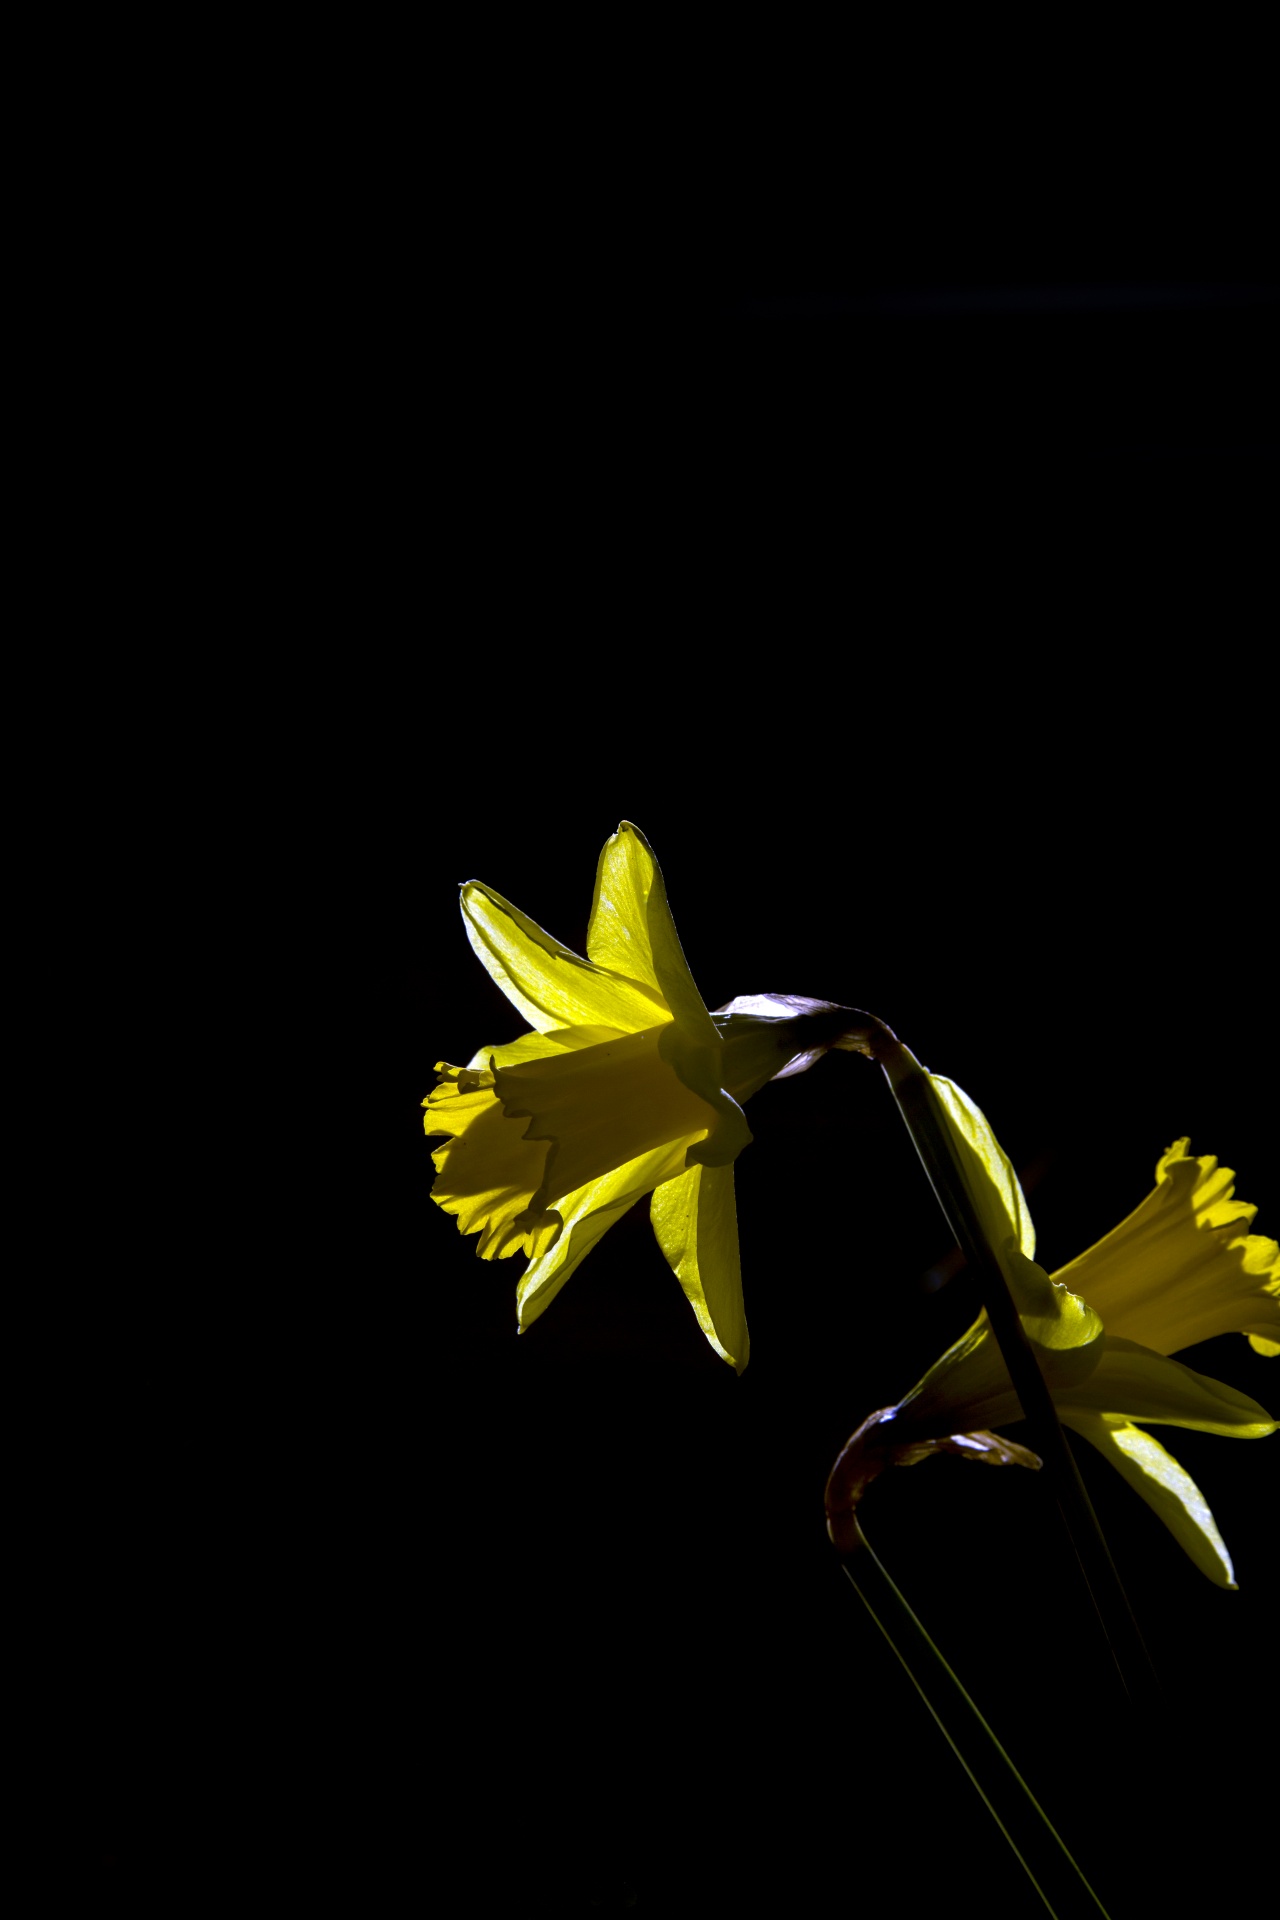 Narciso giallo